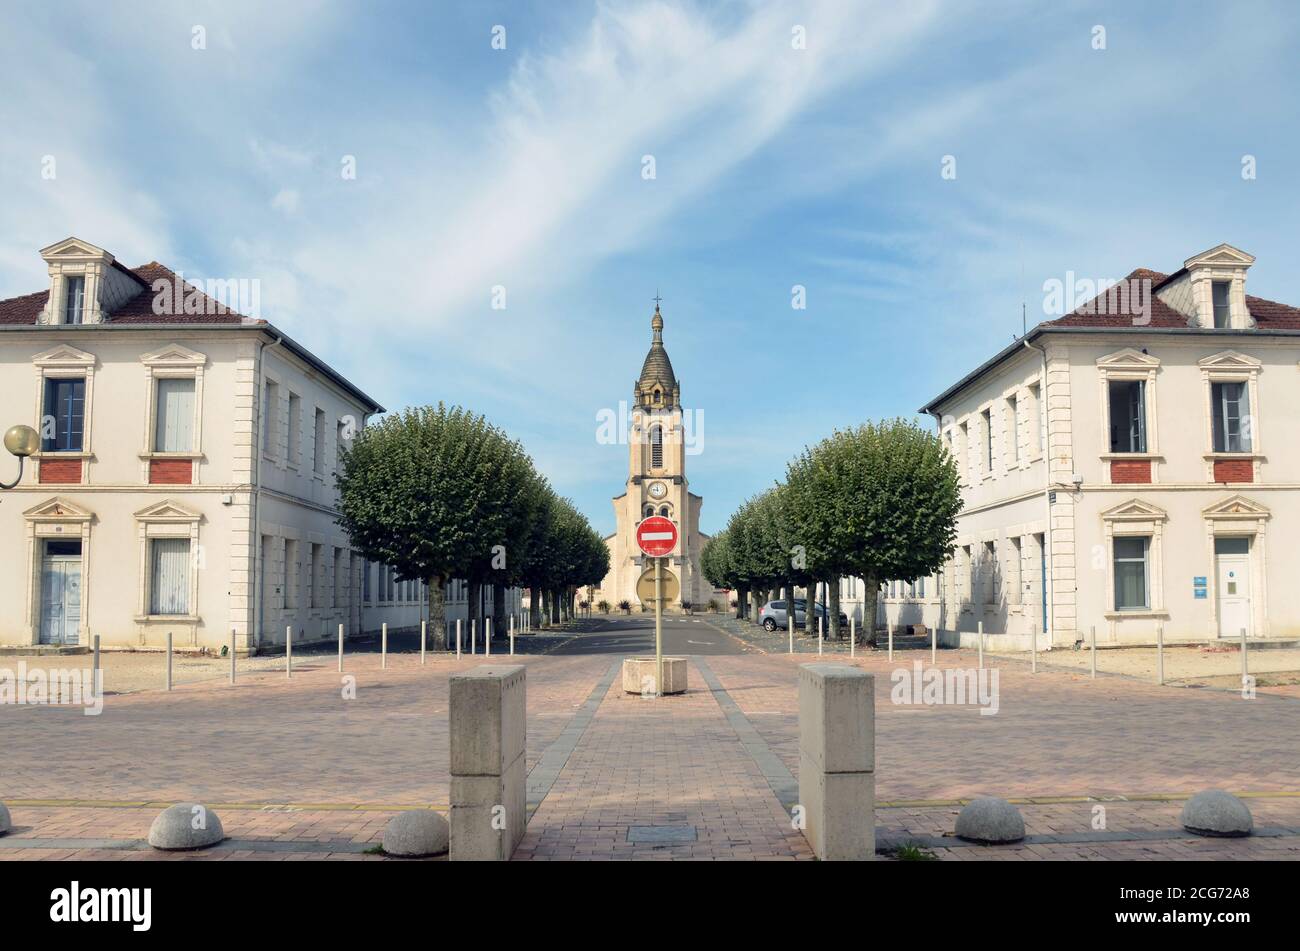 Die Stadt Morcenx, Südwestfrankreich, liegt zwischen Bordeaux und Bayonne. Hier ist die Kirche. Stockfoto